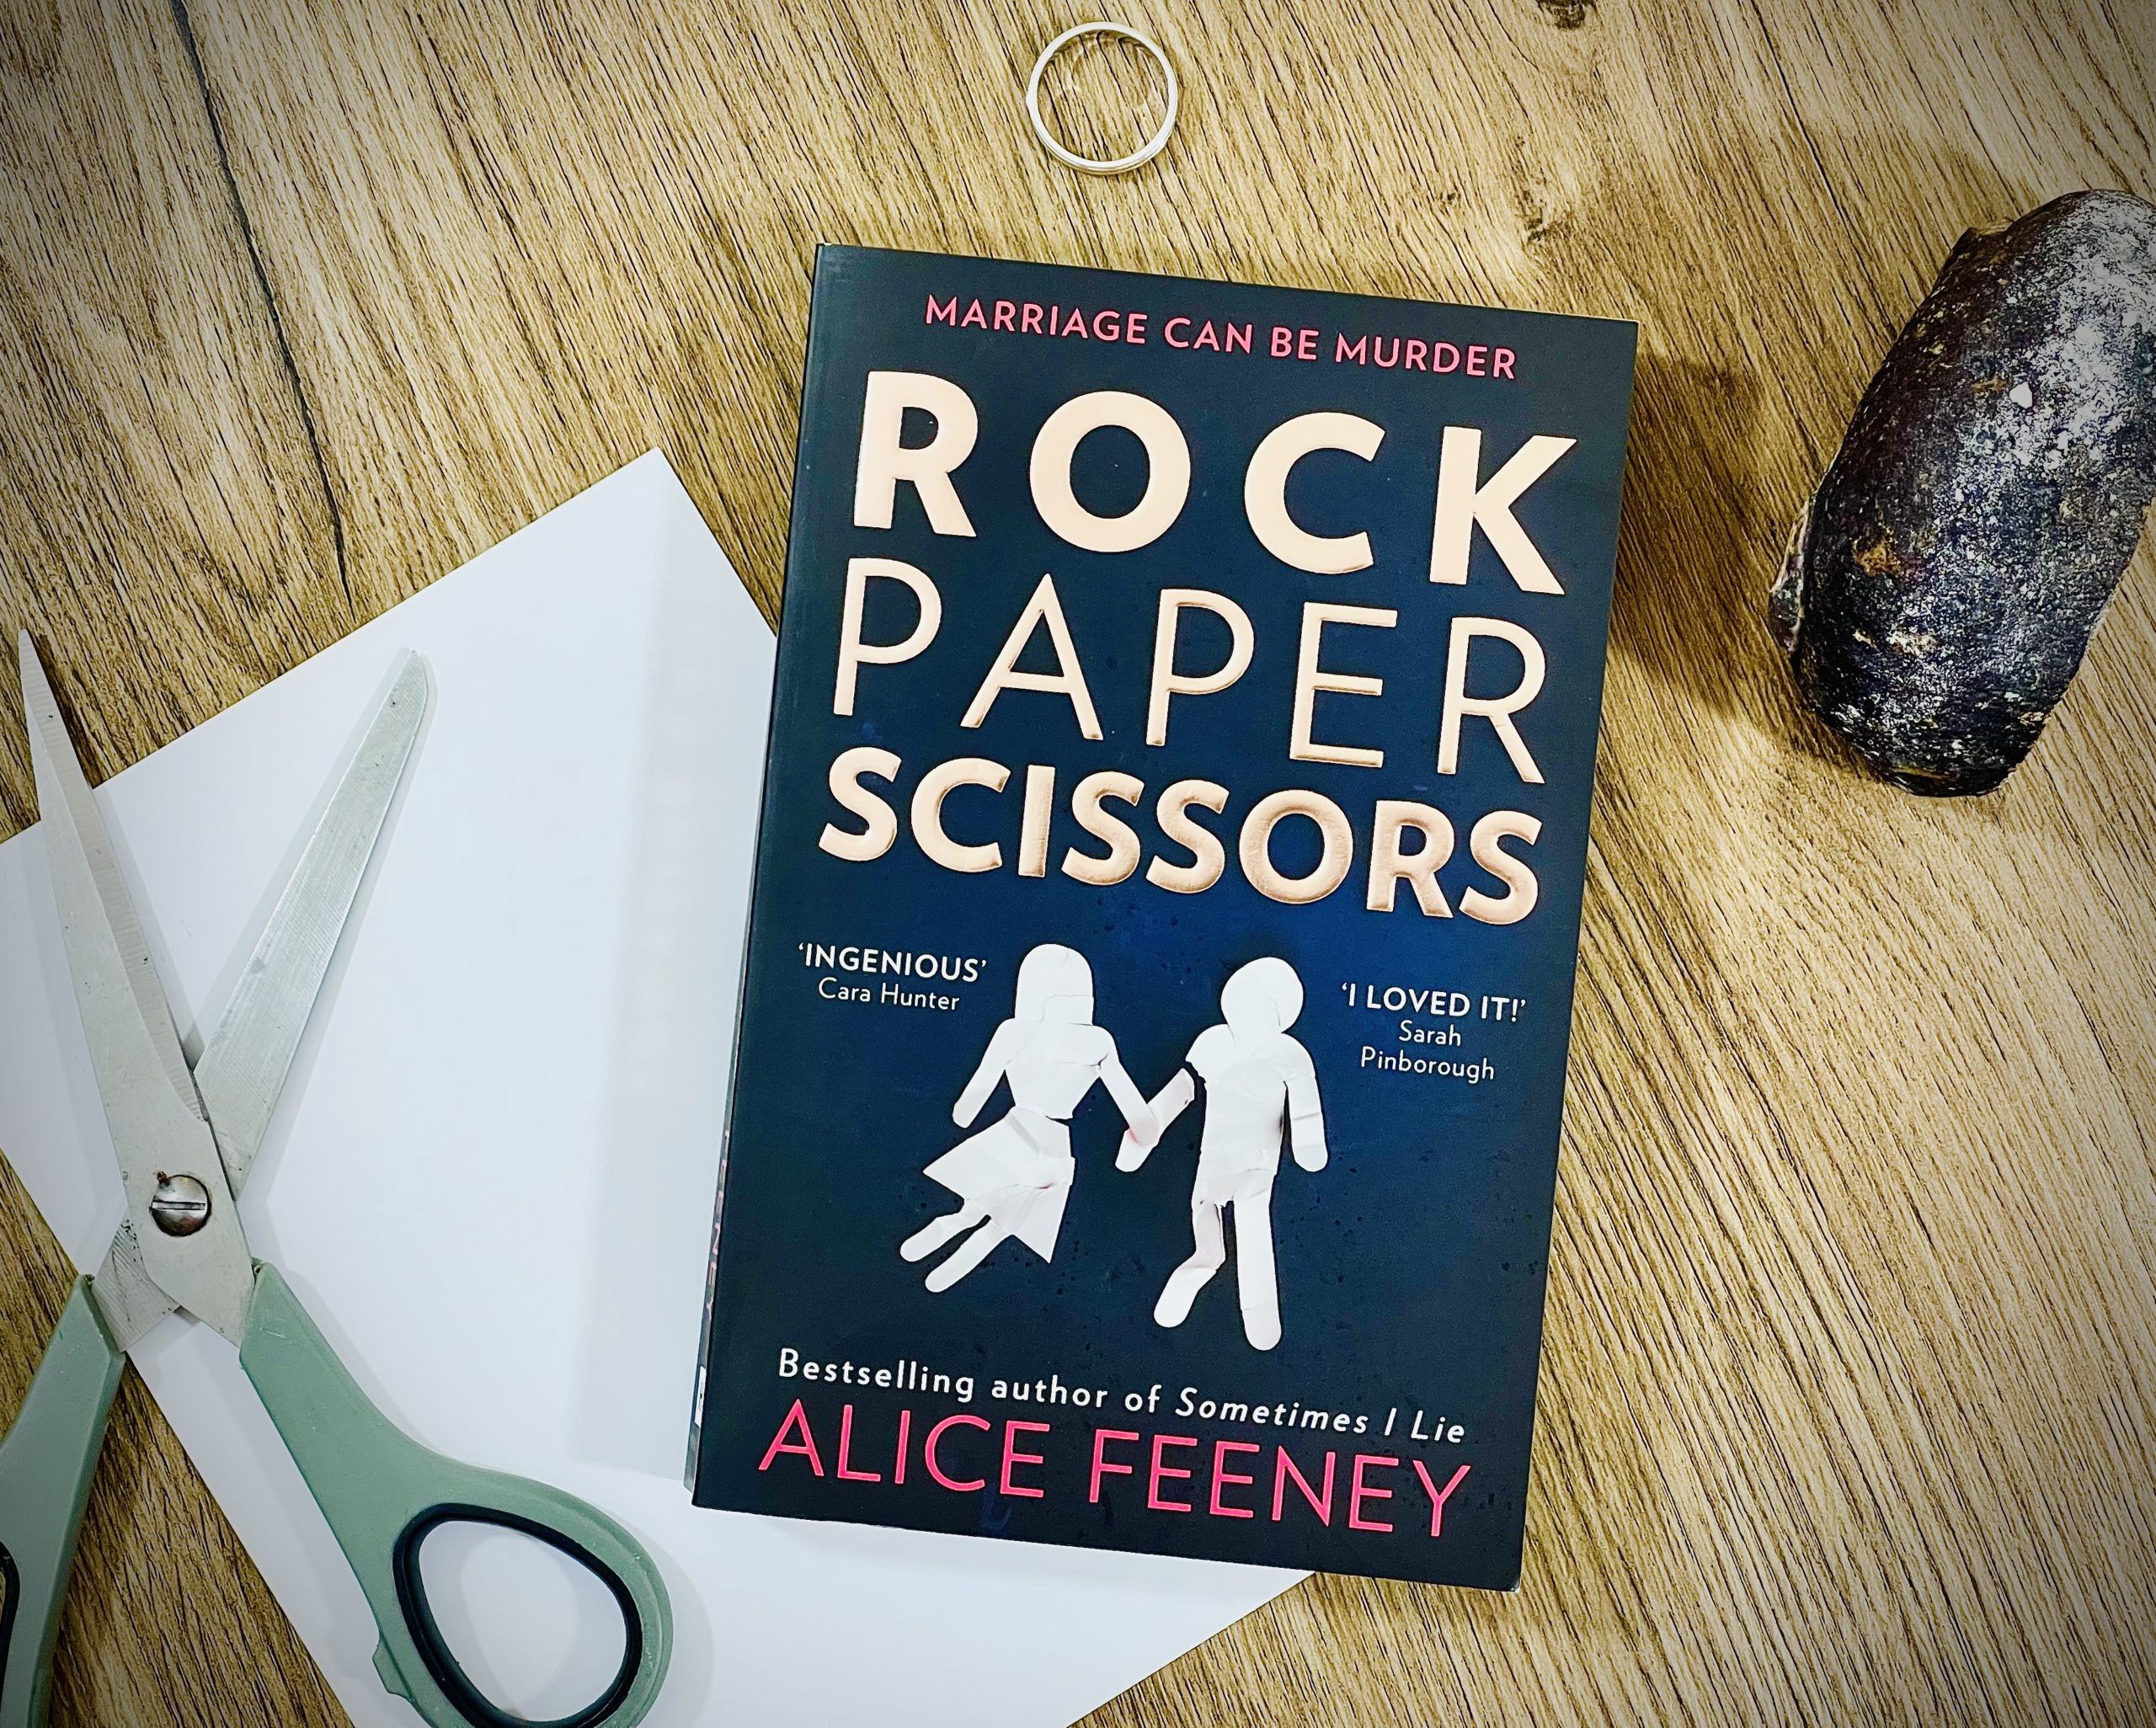 Rock Paper Scissors by Alice Feeney - Tea Leaves & Reads